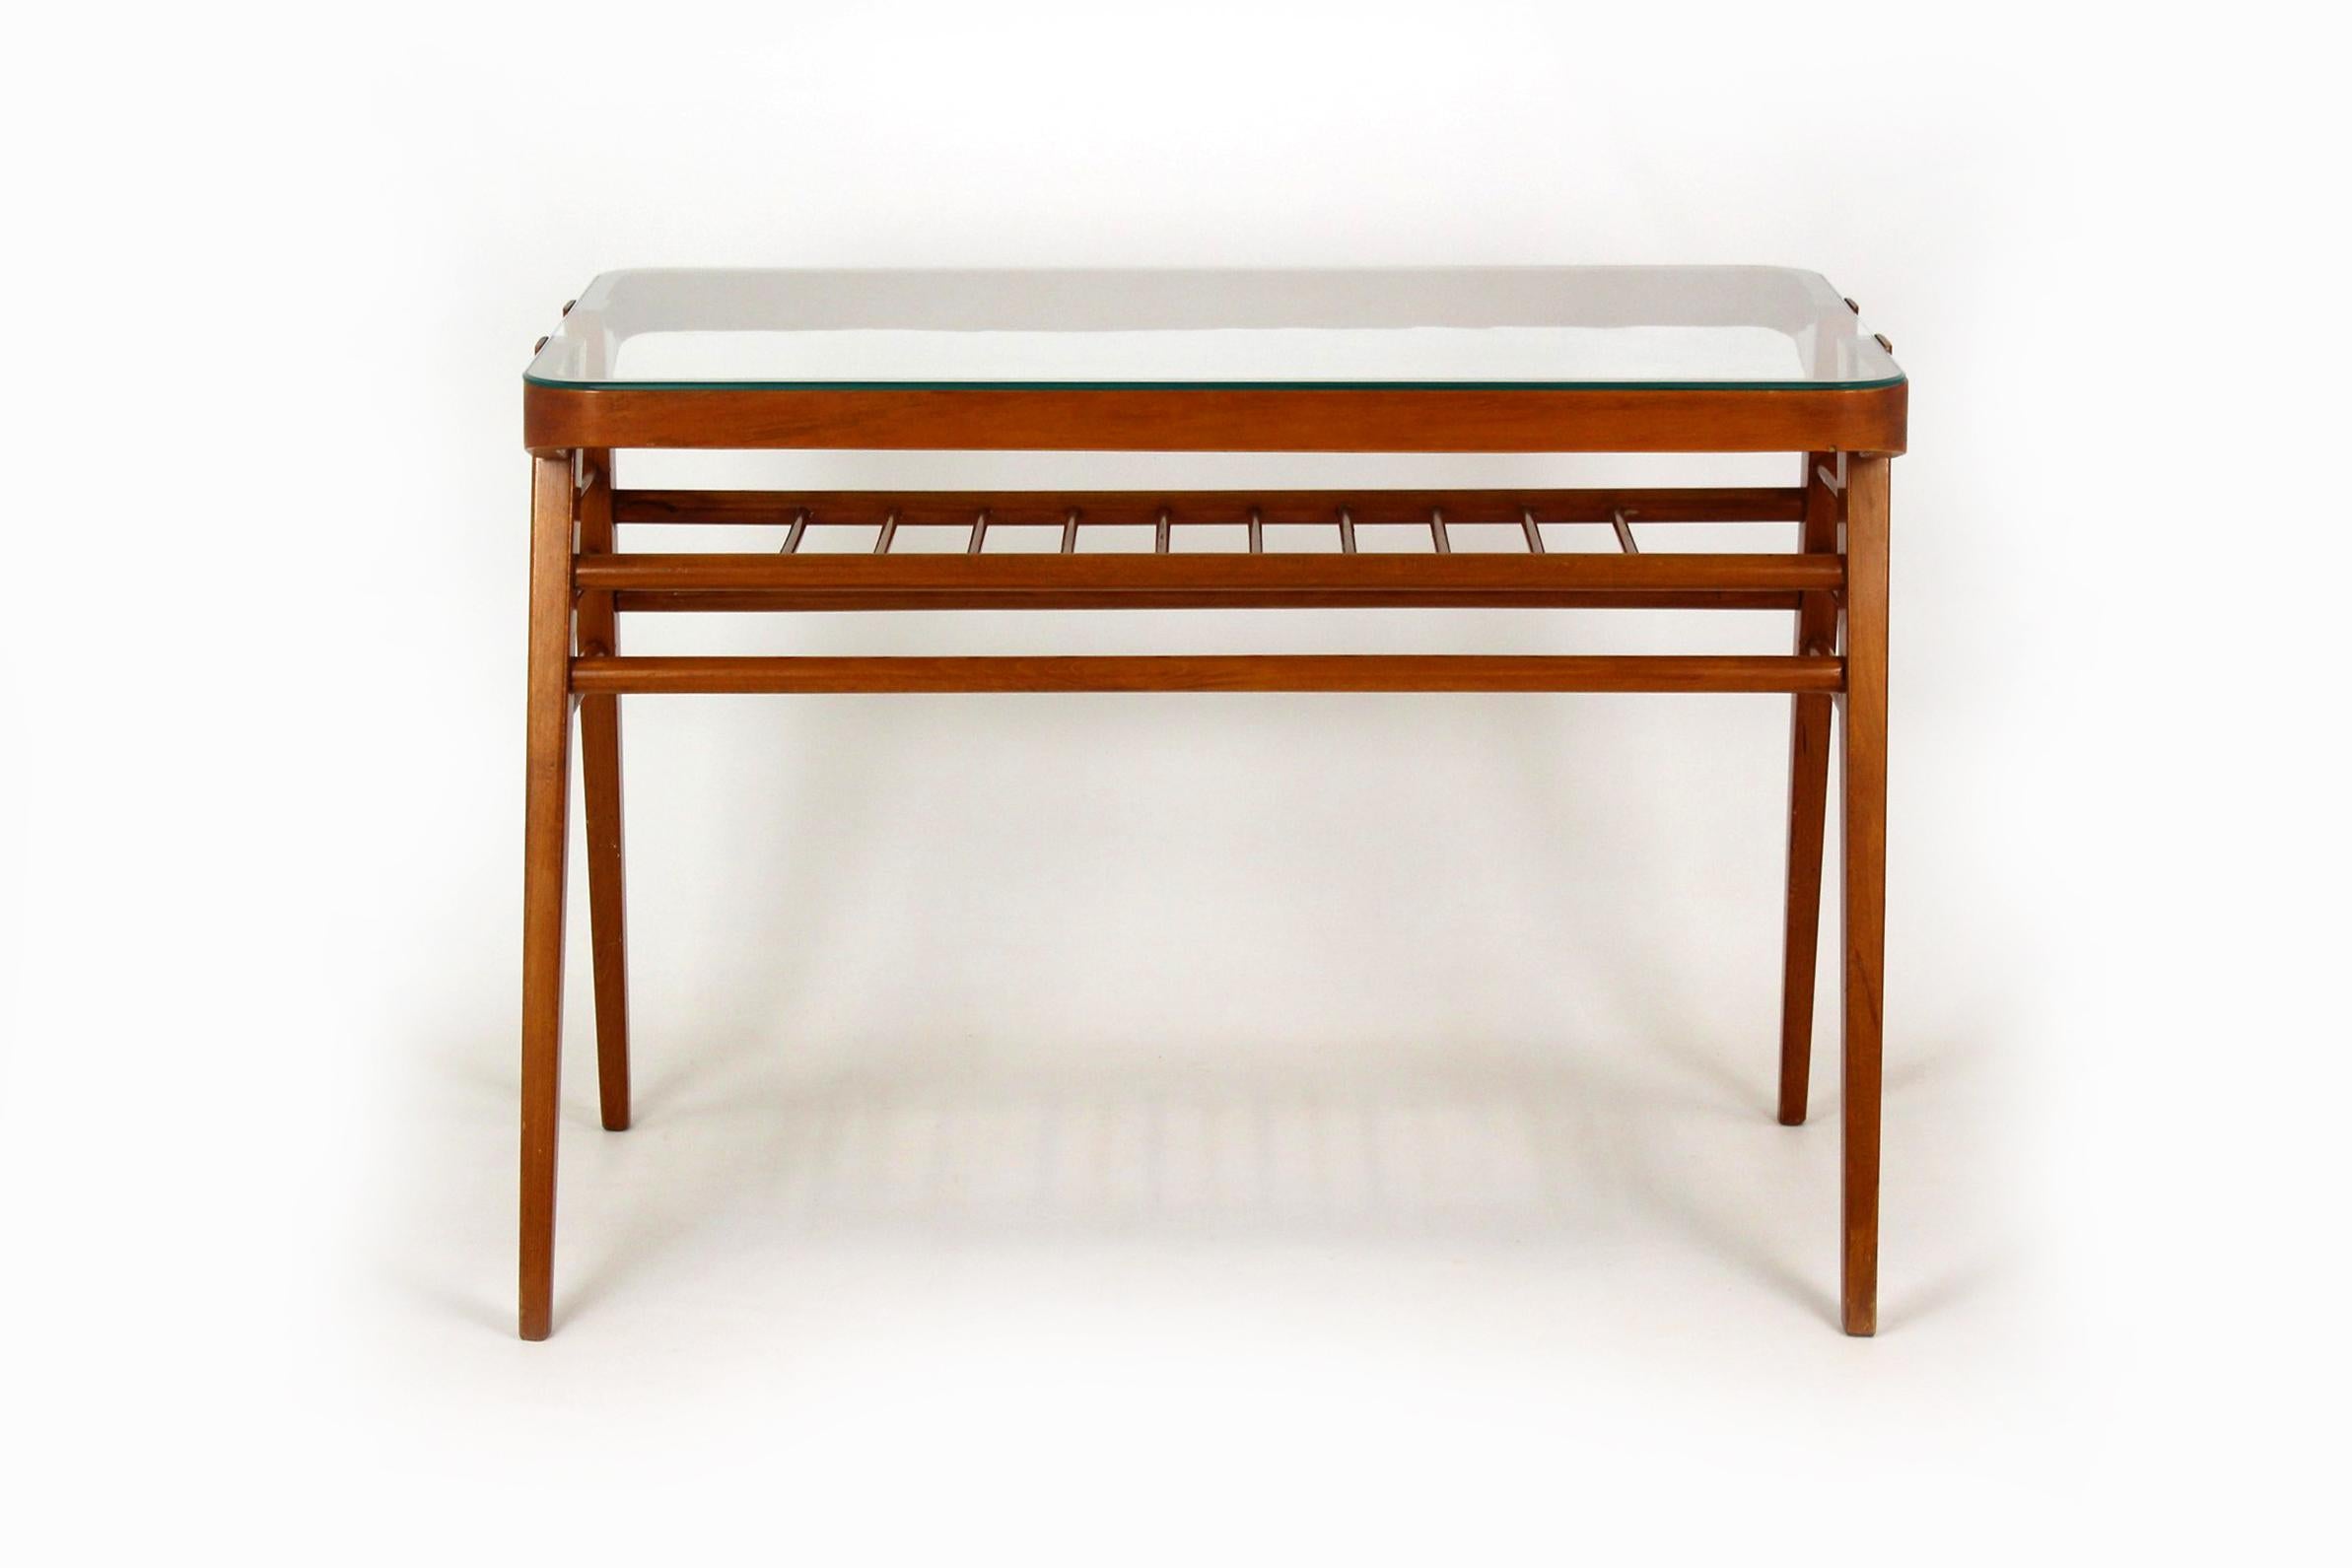 
Une table basse unique, une combinaison d'une structure en bois et de verre. Il a été conçu par František Jirák et produit dans les années 1960 en Tchécoslovaquie.
La table est conservée dans son état d'origine, très bon, des rayures mineures sont